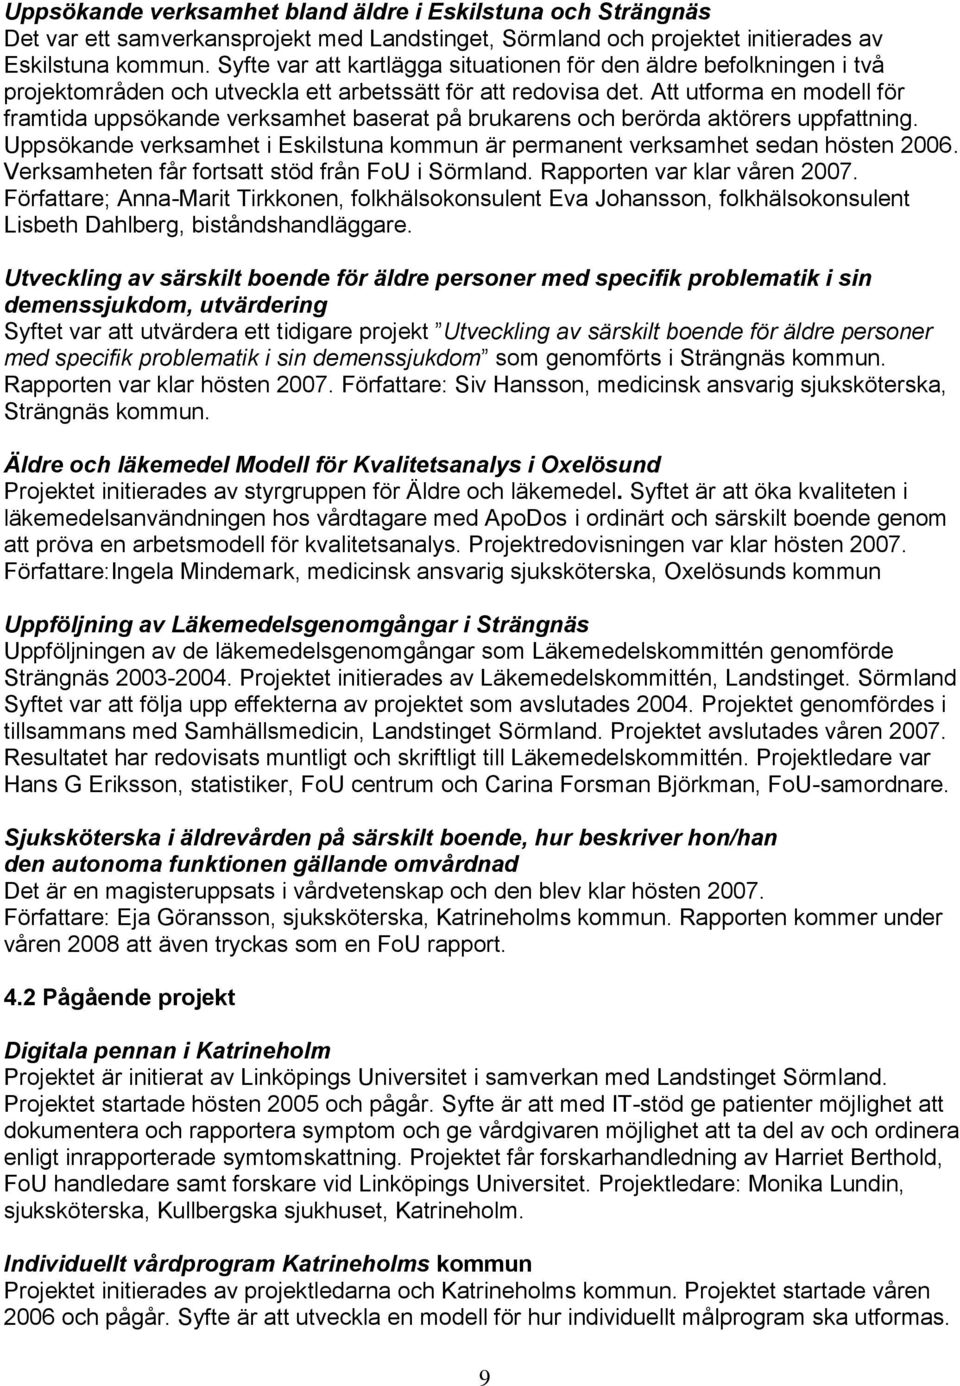 Att utforma en modell för framtida uppsökande verksamhet baserat på brukarens och berörda aktörers uppfattning. Uppsökande verksamhet i Eskilstuna kommun är permanent verksamhet sedan hösten 2006.